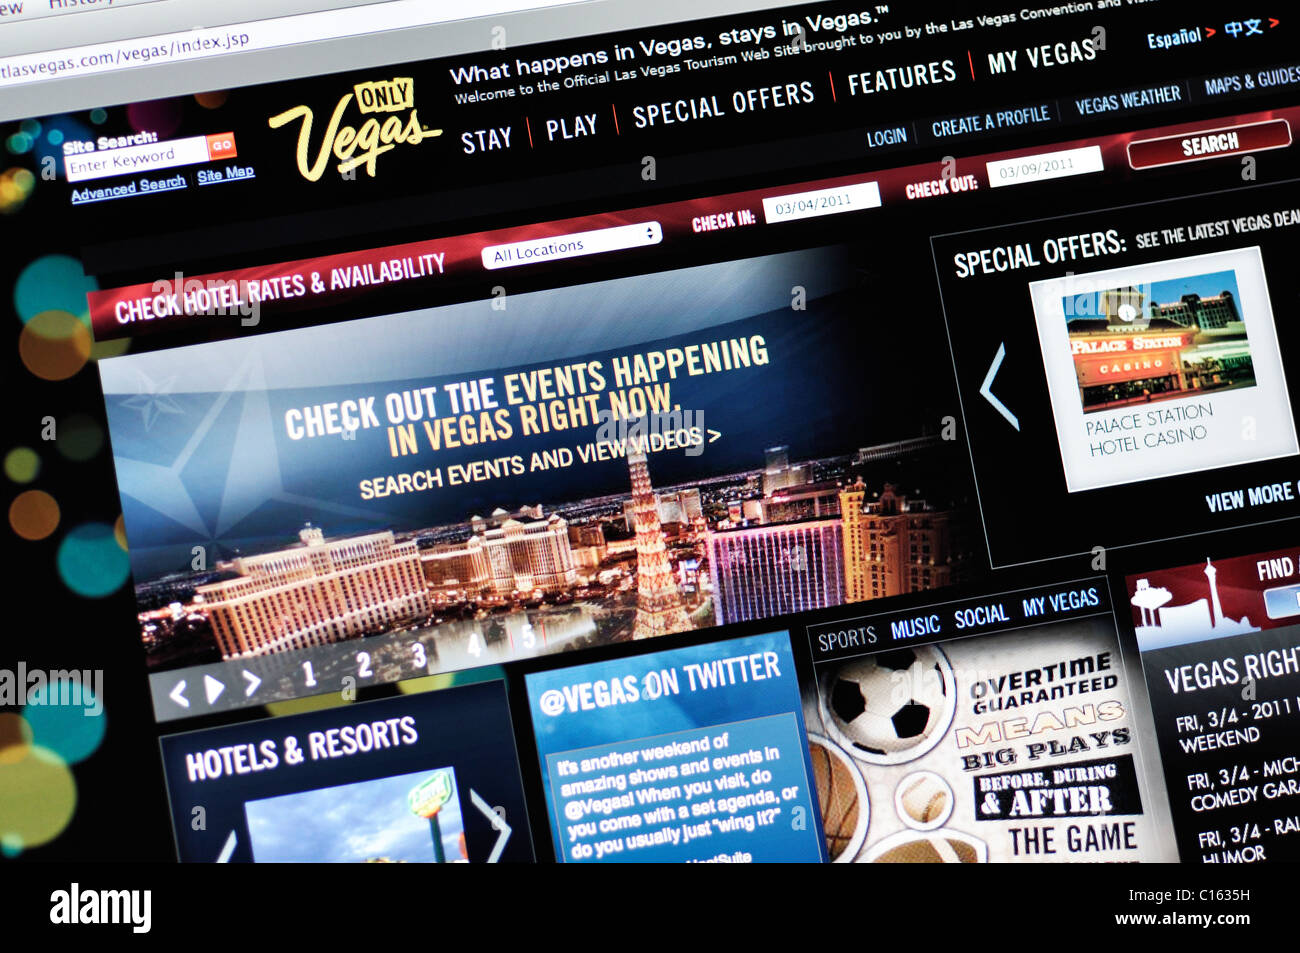 Las Vegas official tourism website Stock Photo